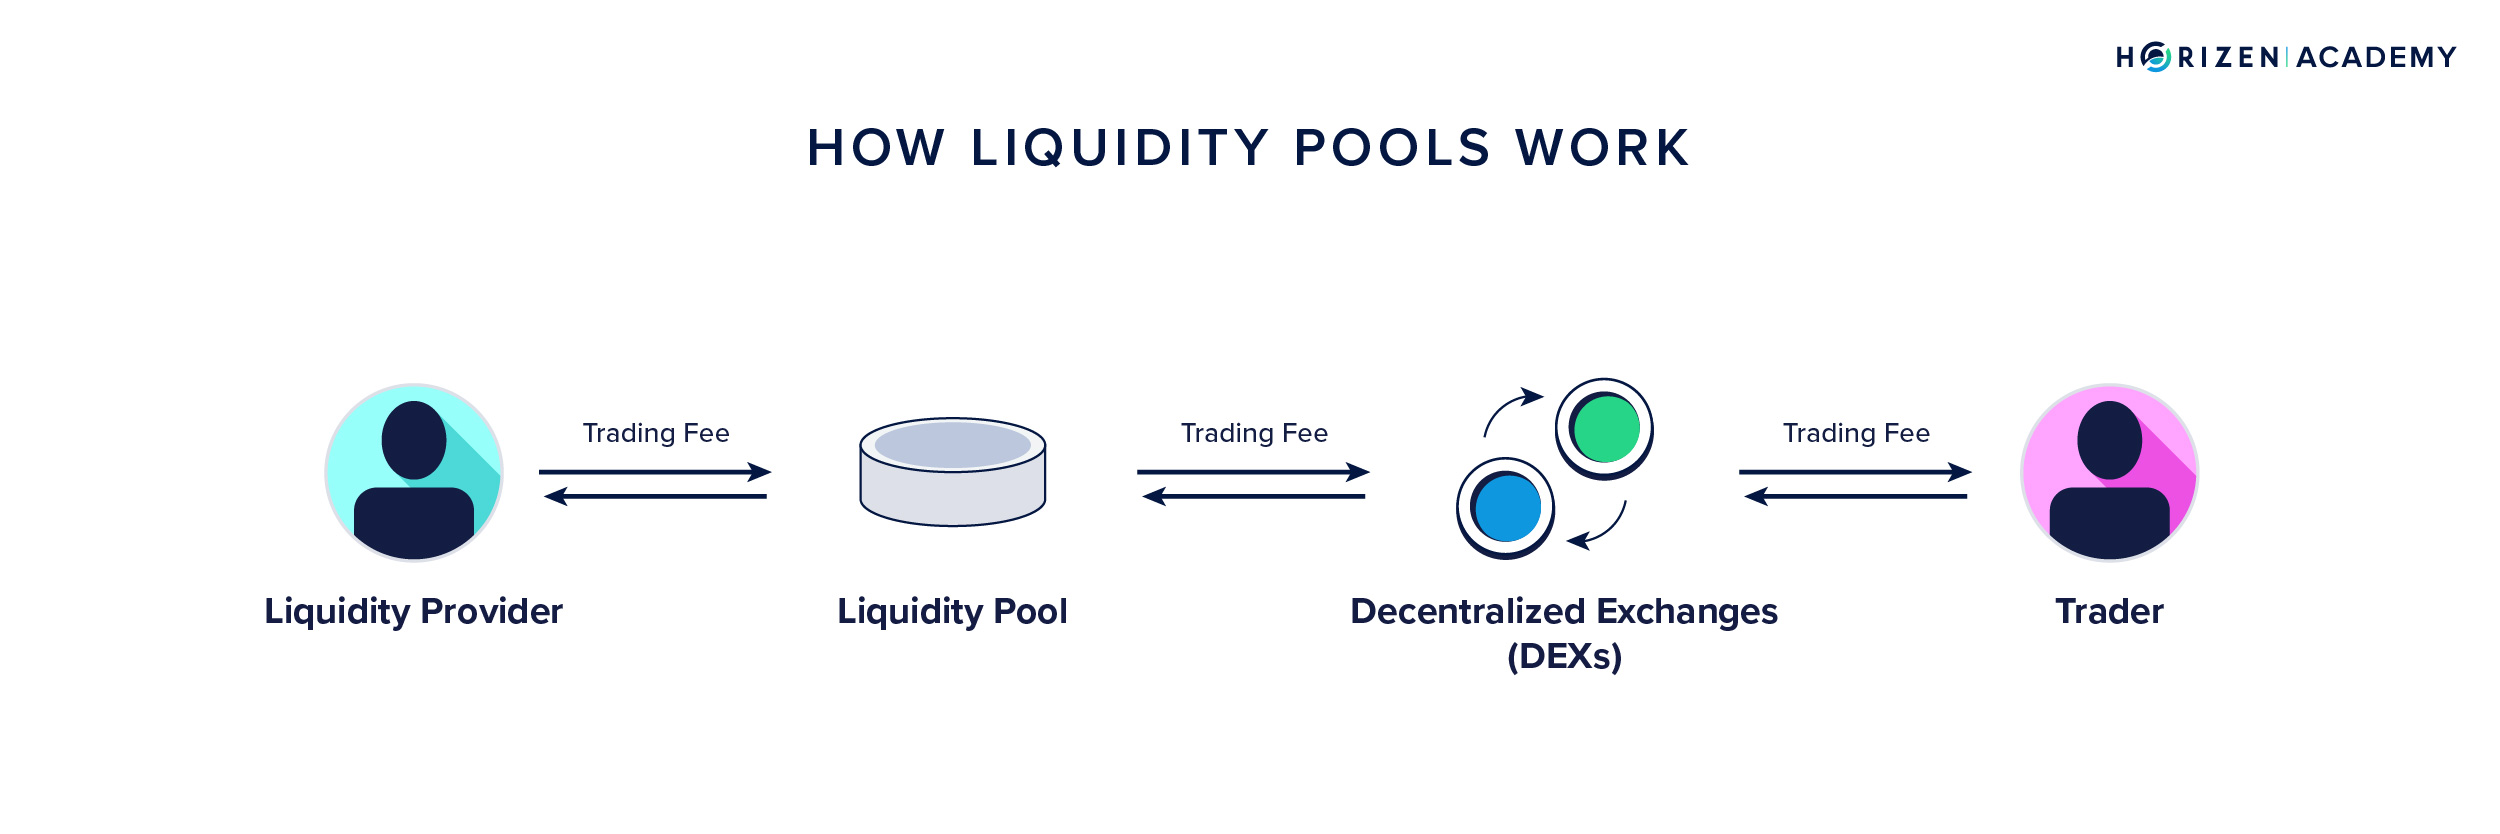 How liquidity pool works